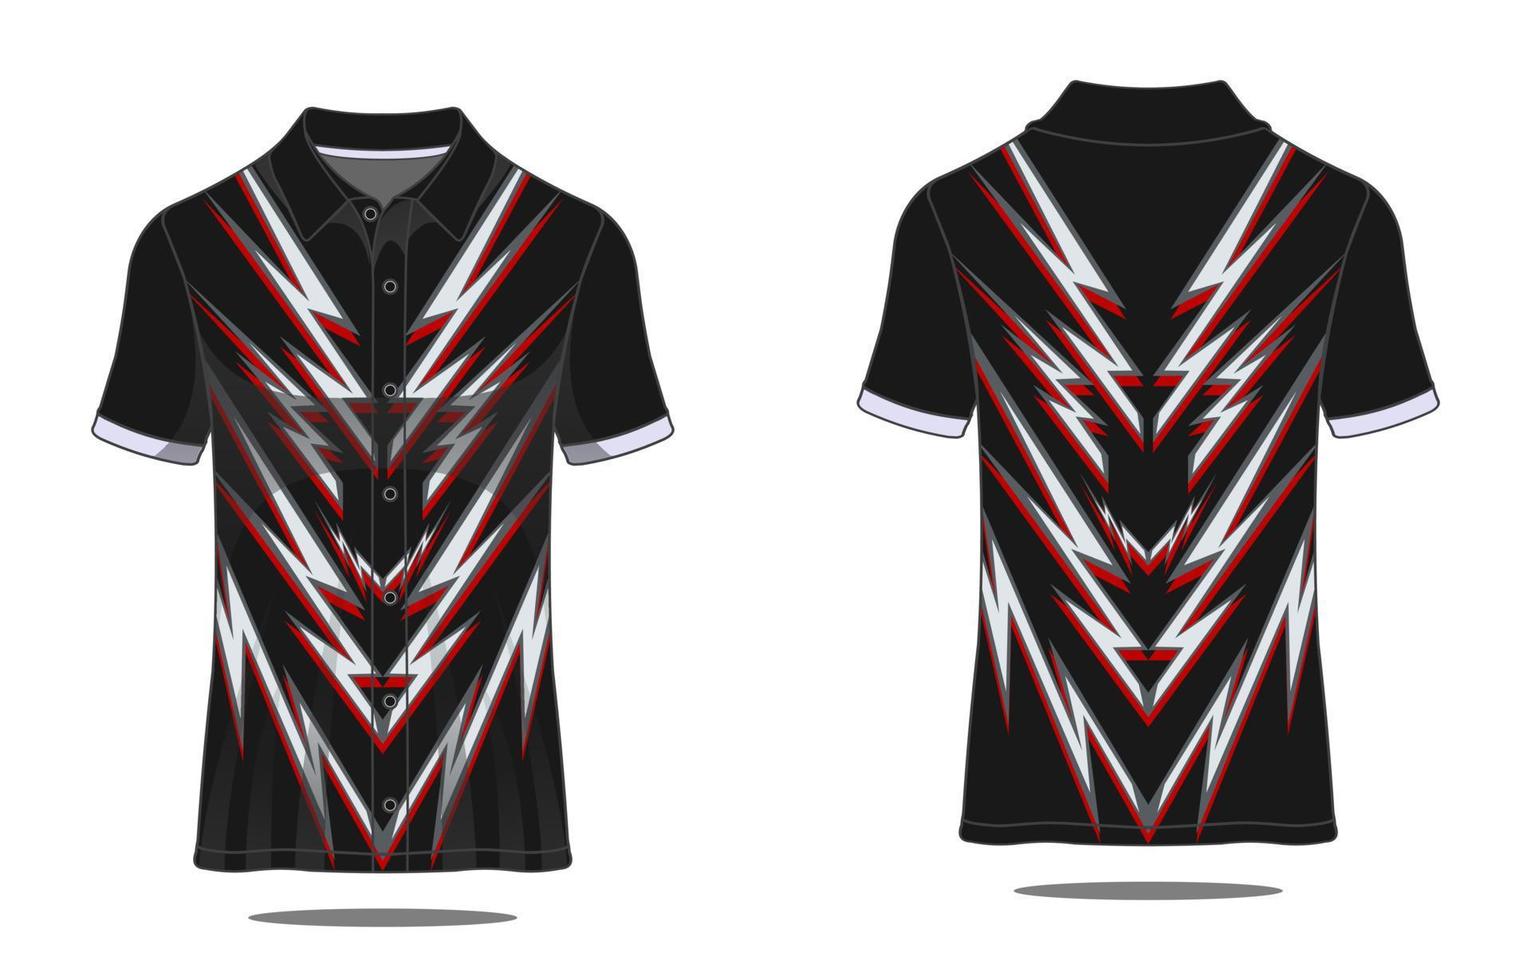 t-shirt sport- abstrac structuur voetbal ontwerp voor racing voetbal gaming motorcross gaming wielersport vector